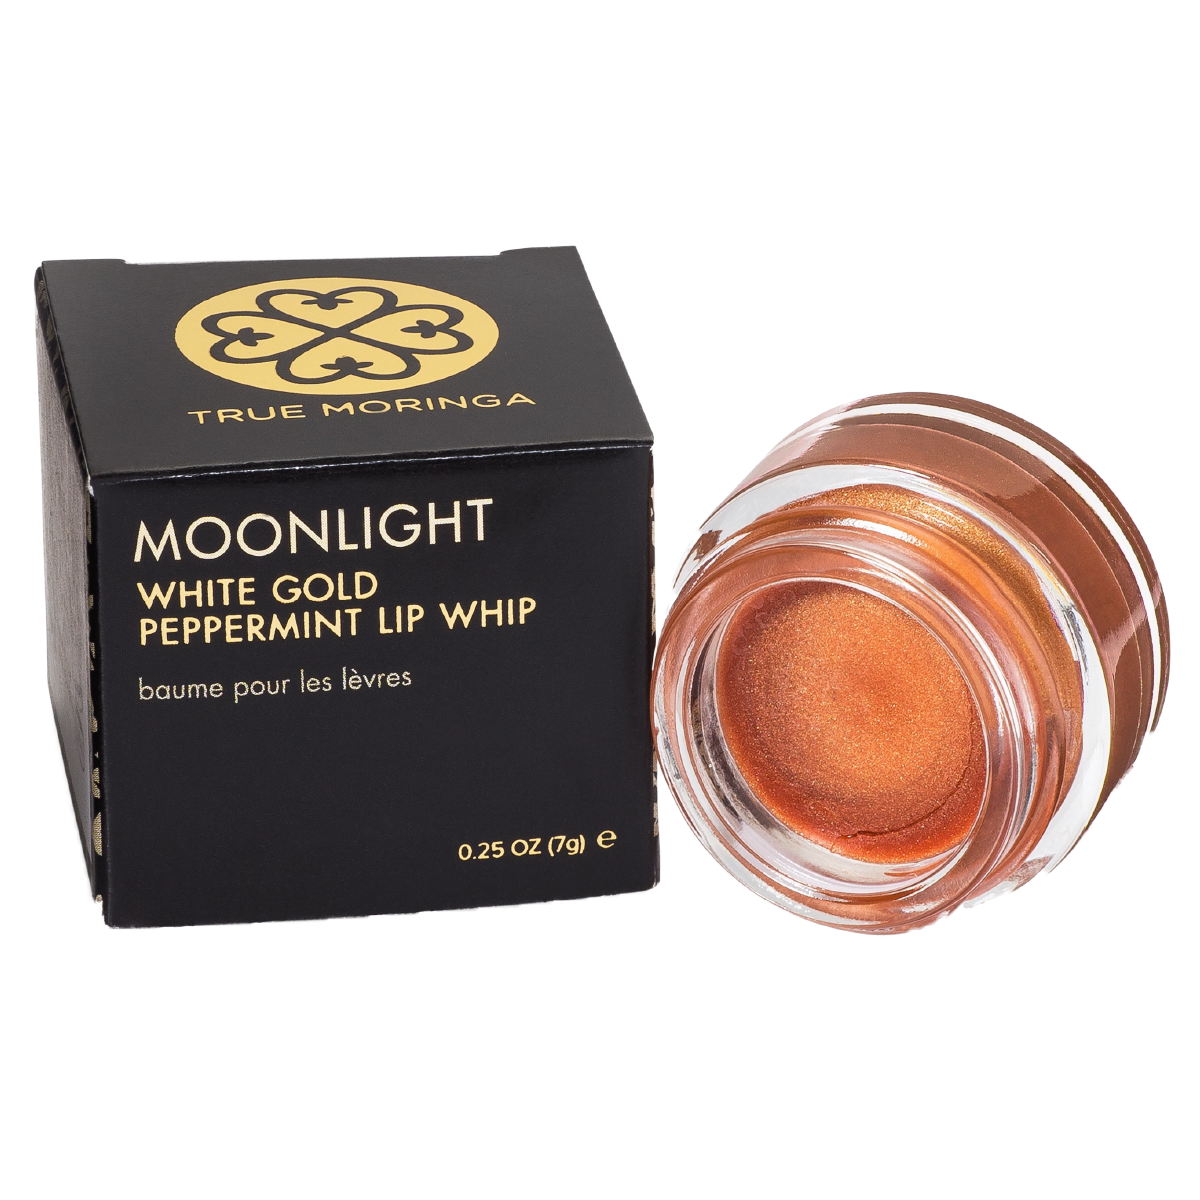 Moonlight (White Gold Peppermint) Lip Whip 0.25 oz - True Moringa